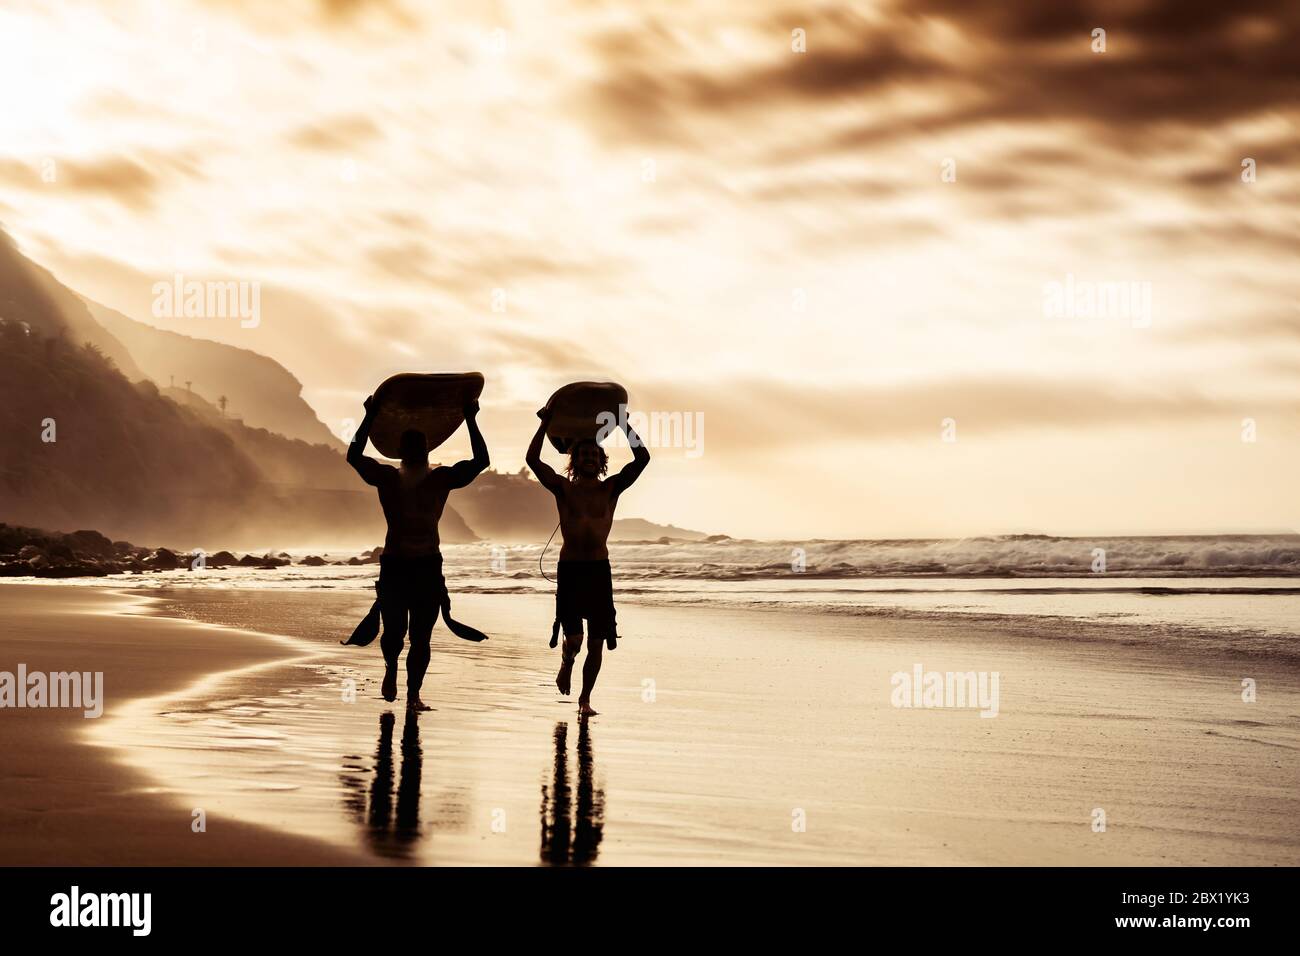 Des amis heureux qui couruent et tiennent des planches de surf sur la plage au coucher du soleil - le père et le fils de surfers faisant de l'exercice d'échauffement Banque D'Images